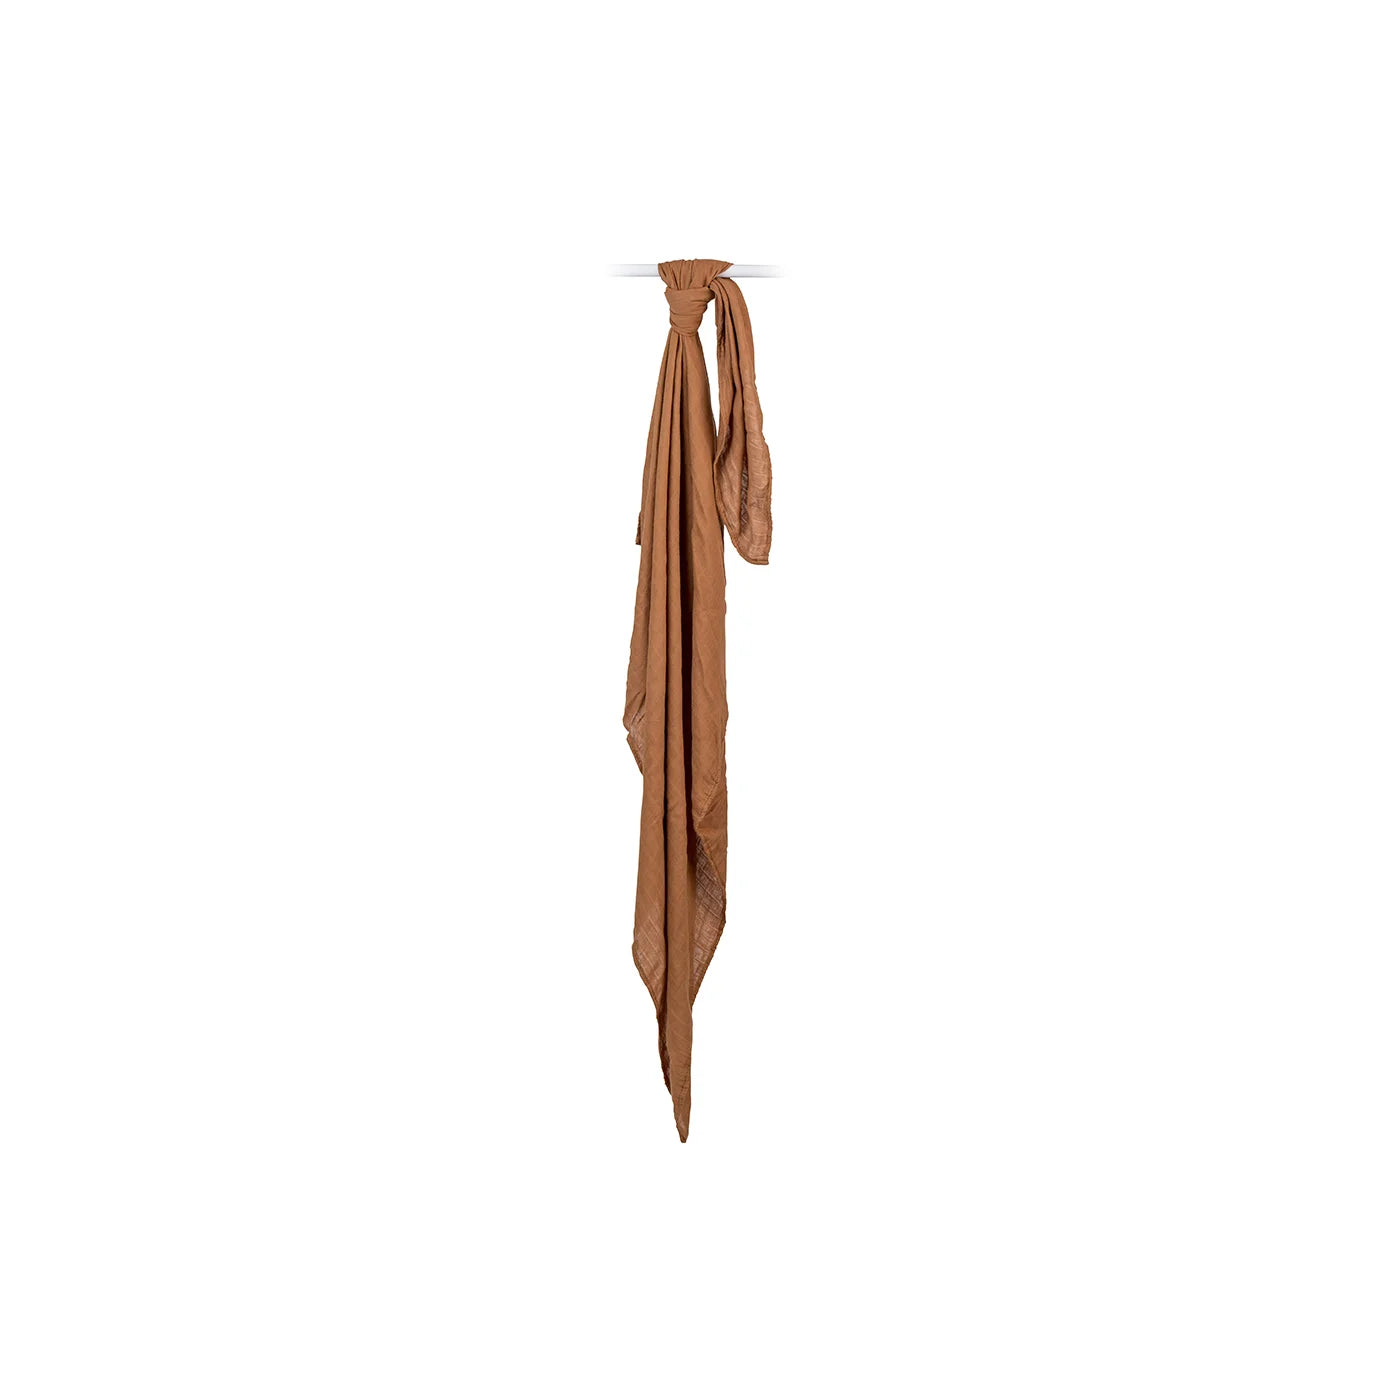 Mouseline bamboo/coton -Tan